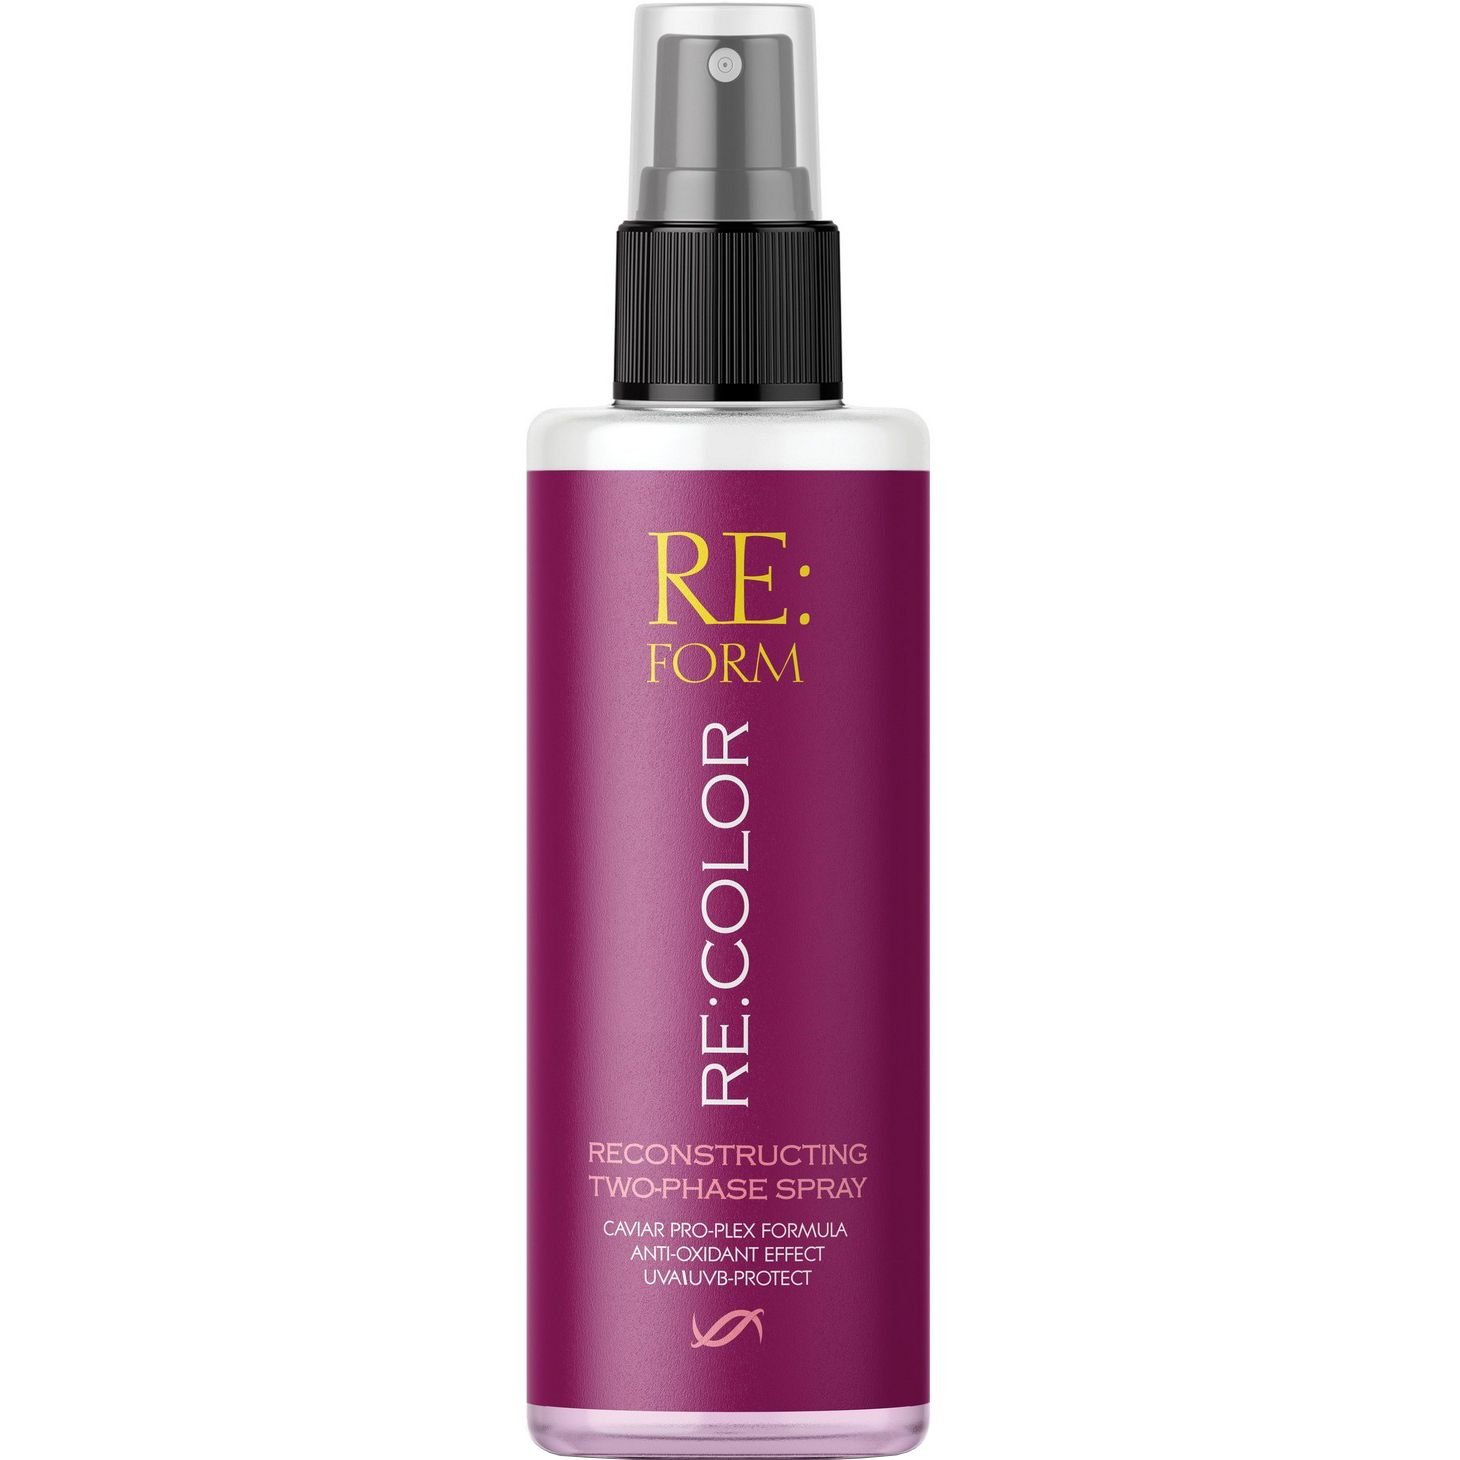 Реконструирующий двухфазный спрей Re:form Re:color Сохранение цвета и восстановление окрашенных волос, 200 мл - фото 1